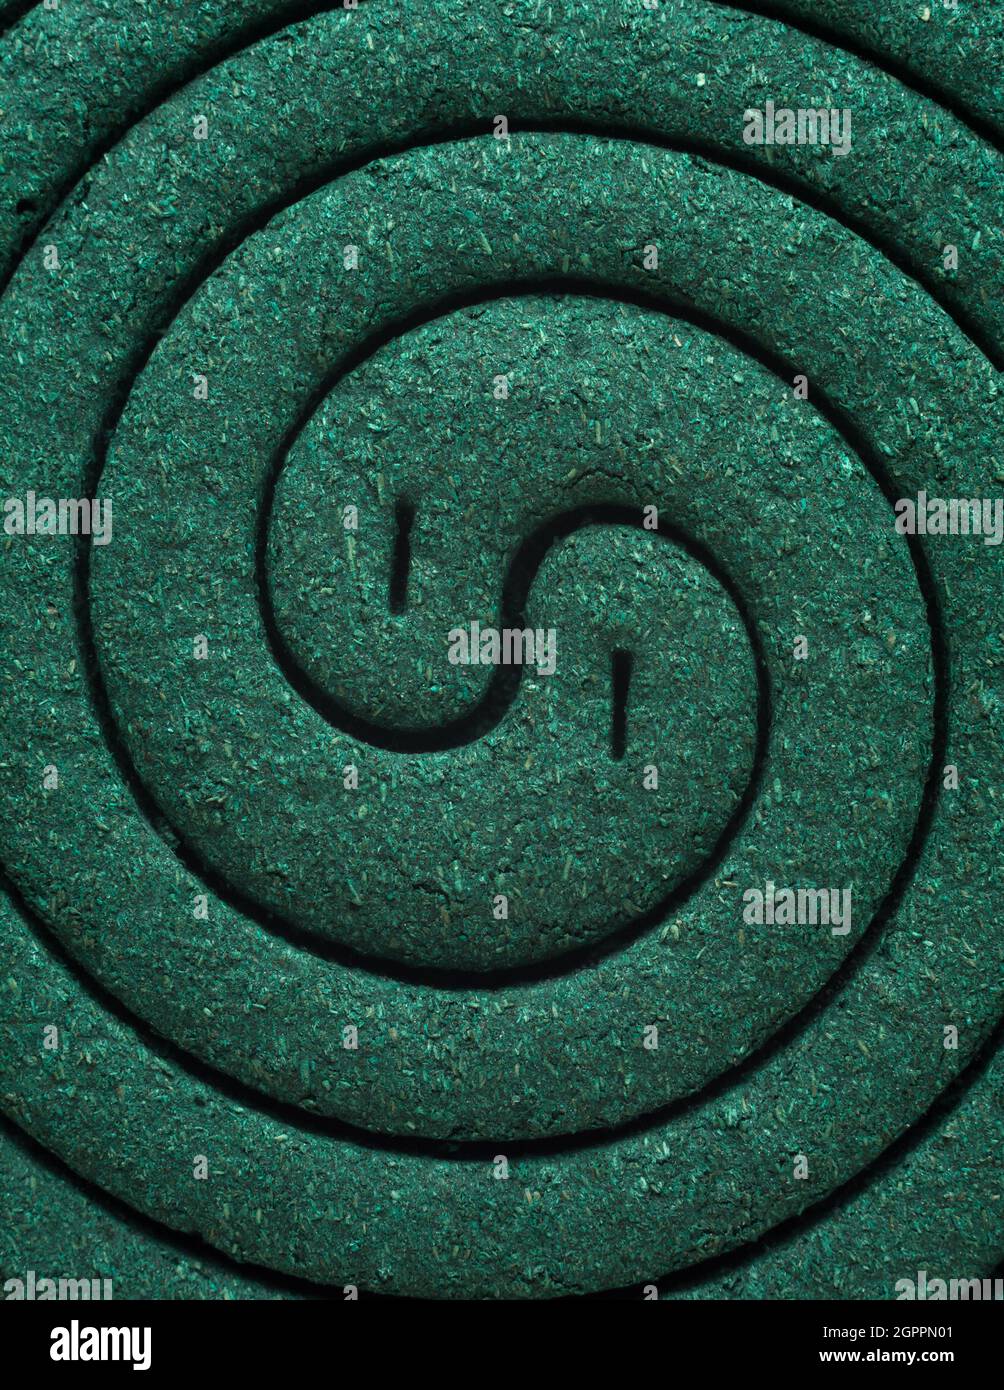 groupe de moustique répulsif bobine, couleur vert foncé gros plan abstrait ou texture de fond Banque D'Images